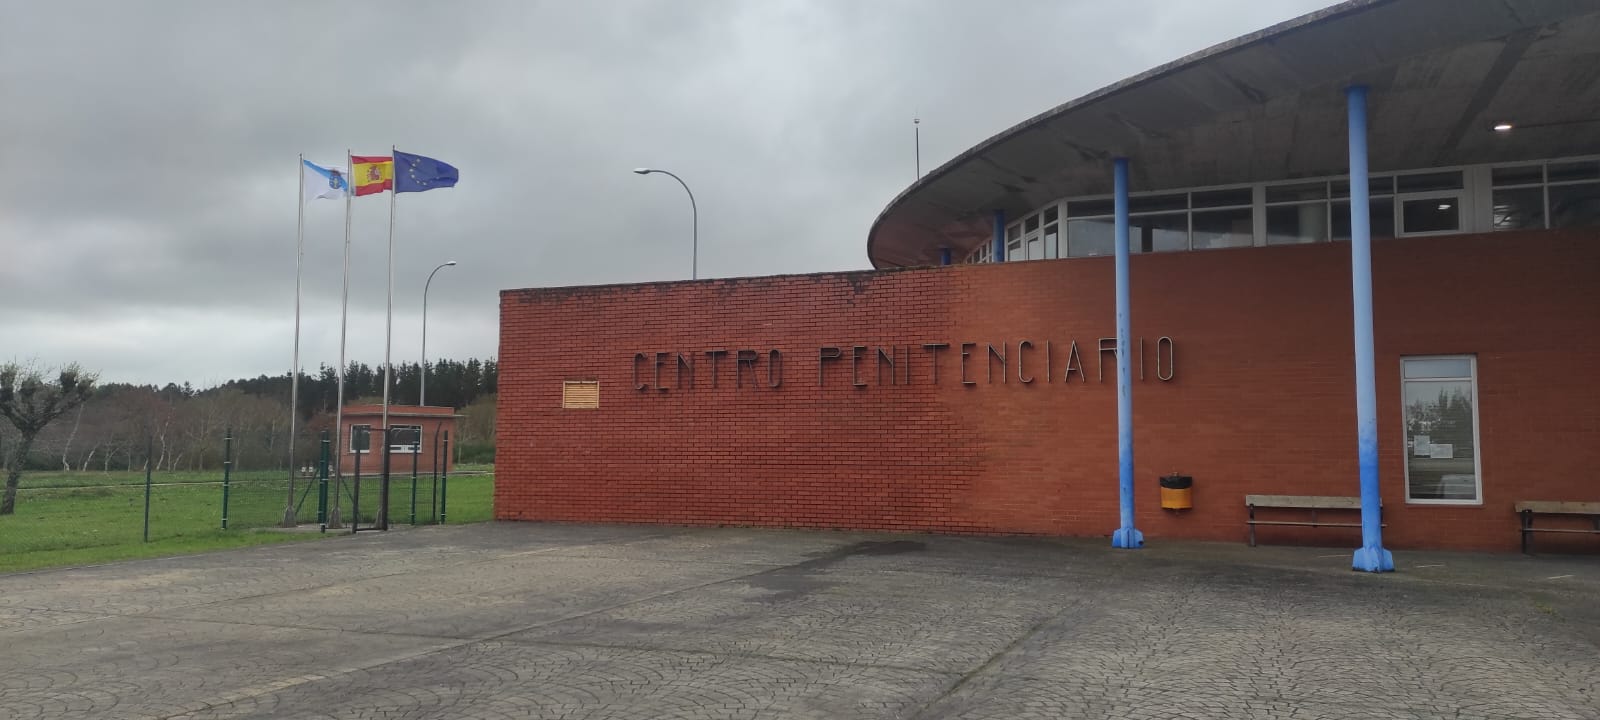 Escuela de Familia llega al Centro Penitenciario de Teixeiro (A Coruña)